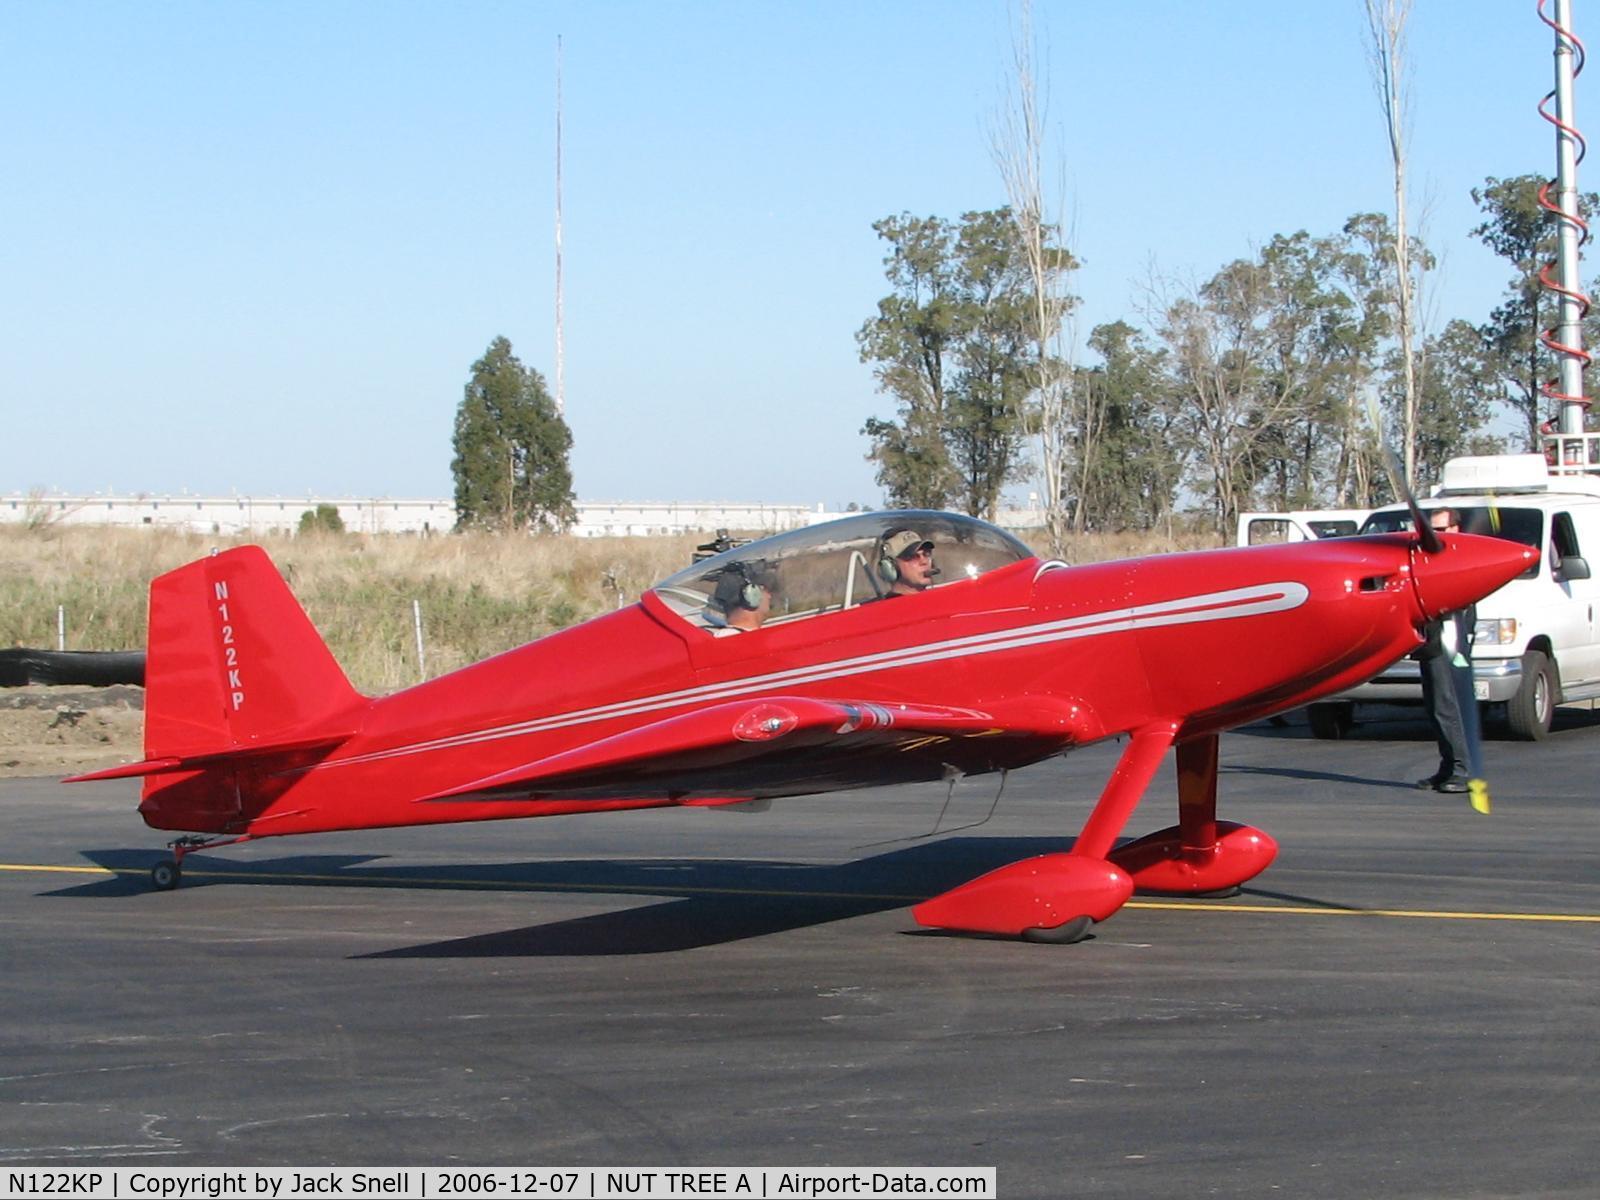 N122KP, 2002 Harmon Rocket II C/N PETERSON-2, Taken at the Nut Tree Airport in Vacaville, Ca.